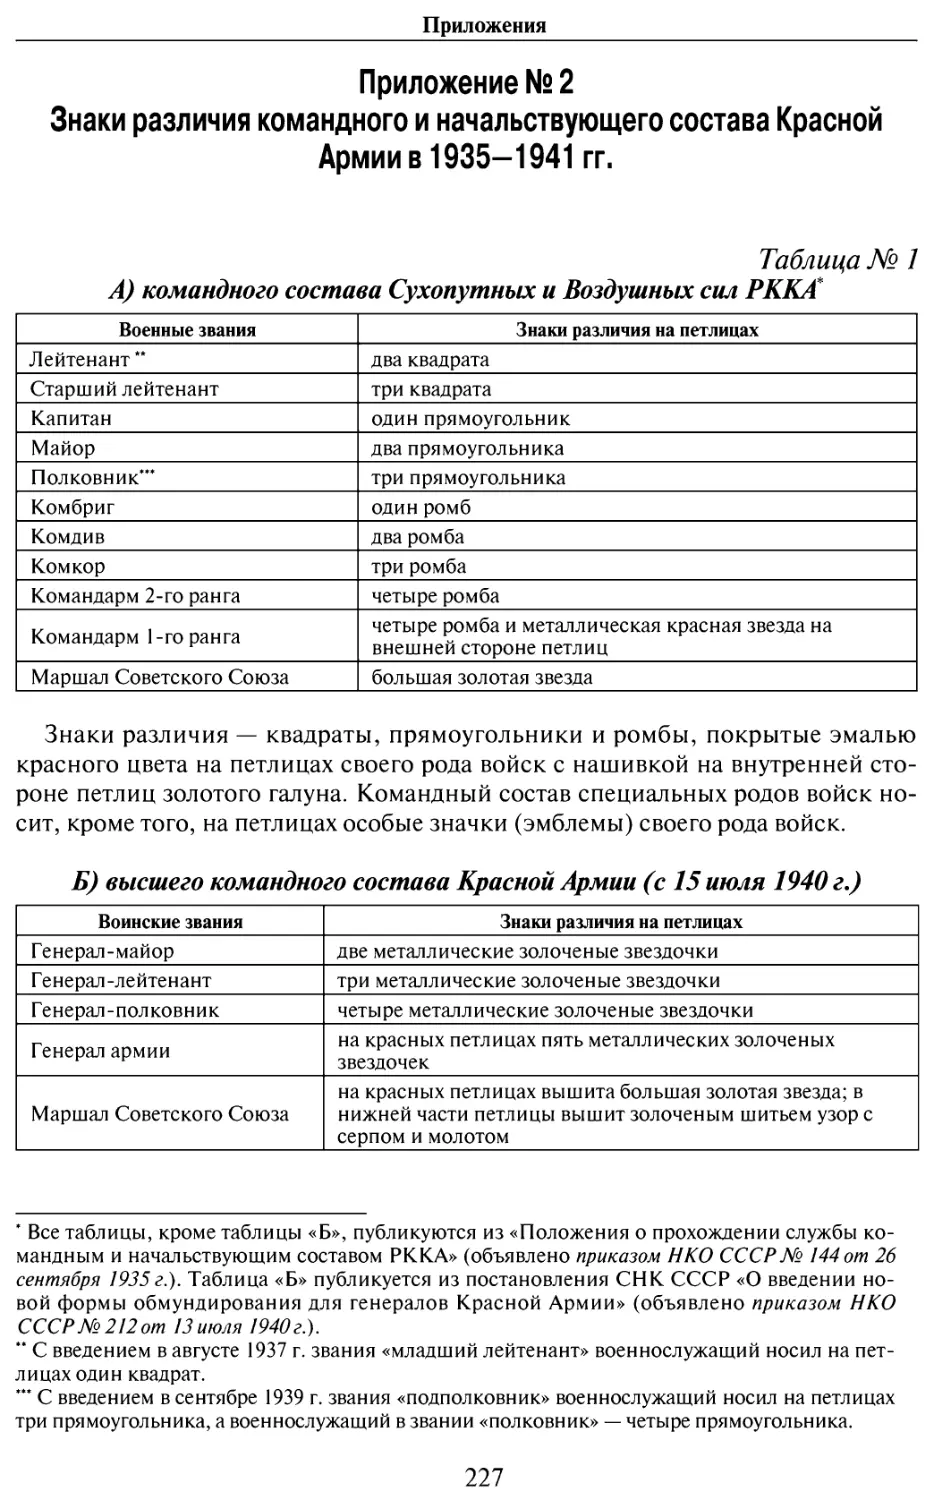 Приложение № 2. Знаки различия командного и начальствующего состава Красной Армии в 1935-1941 г